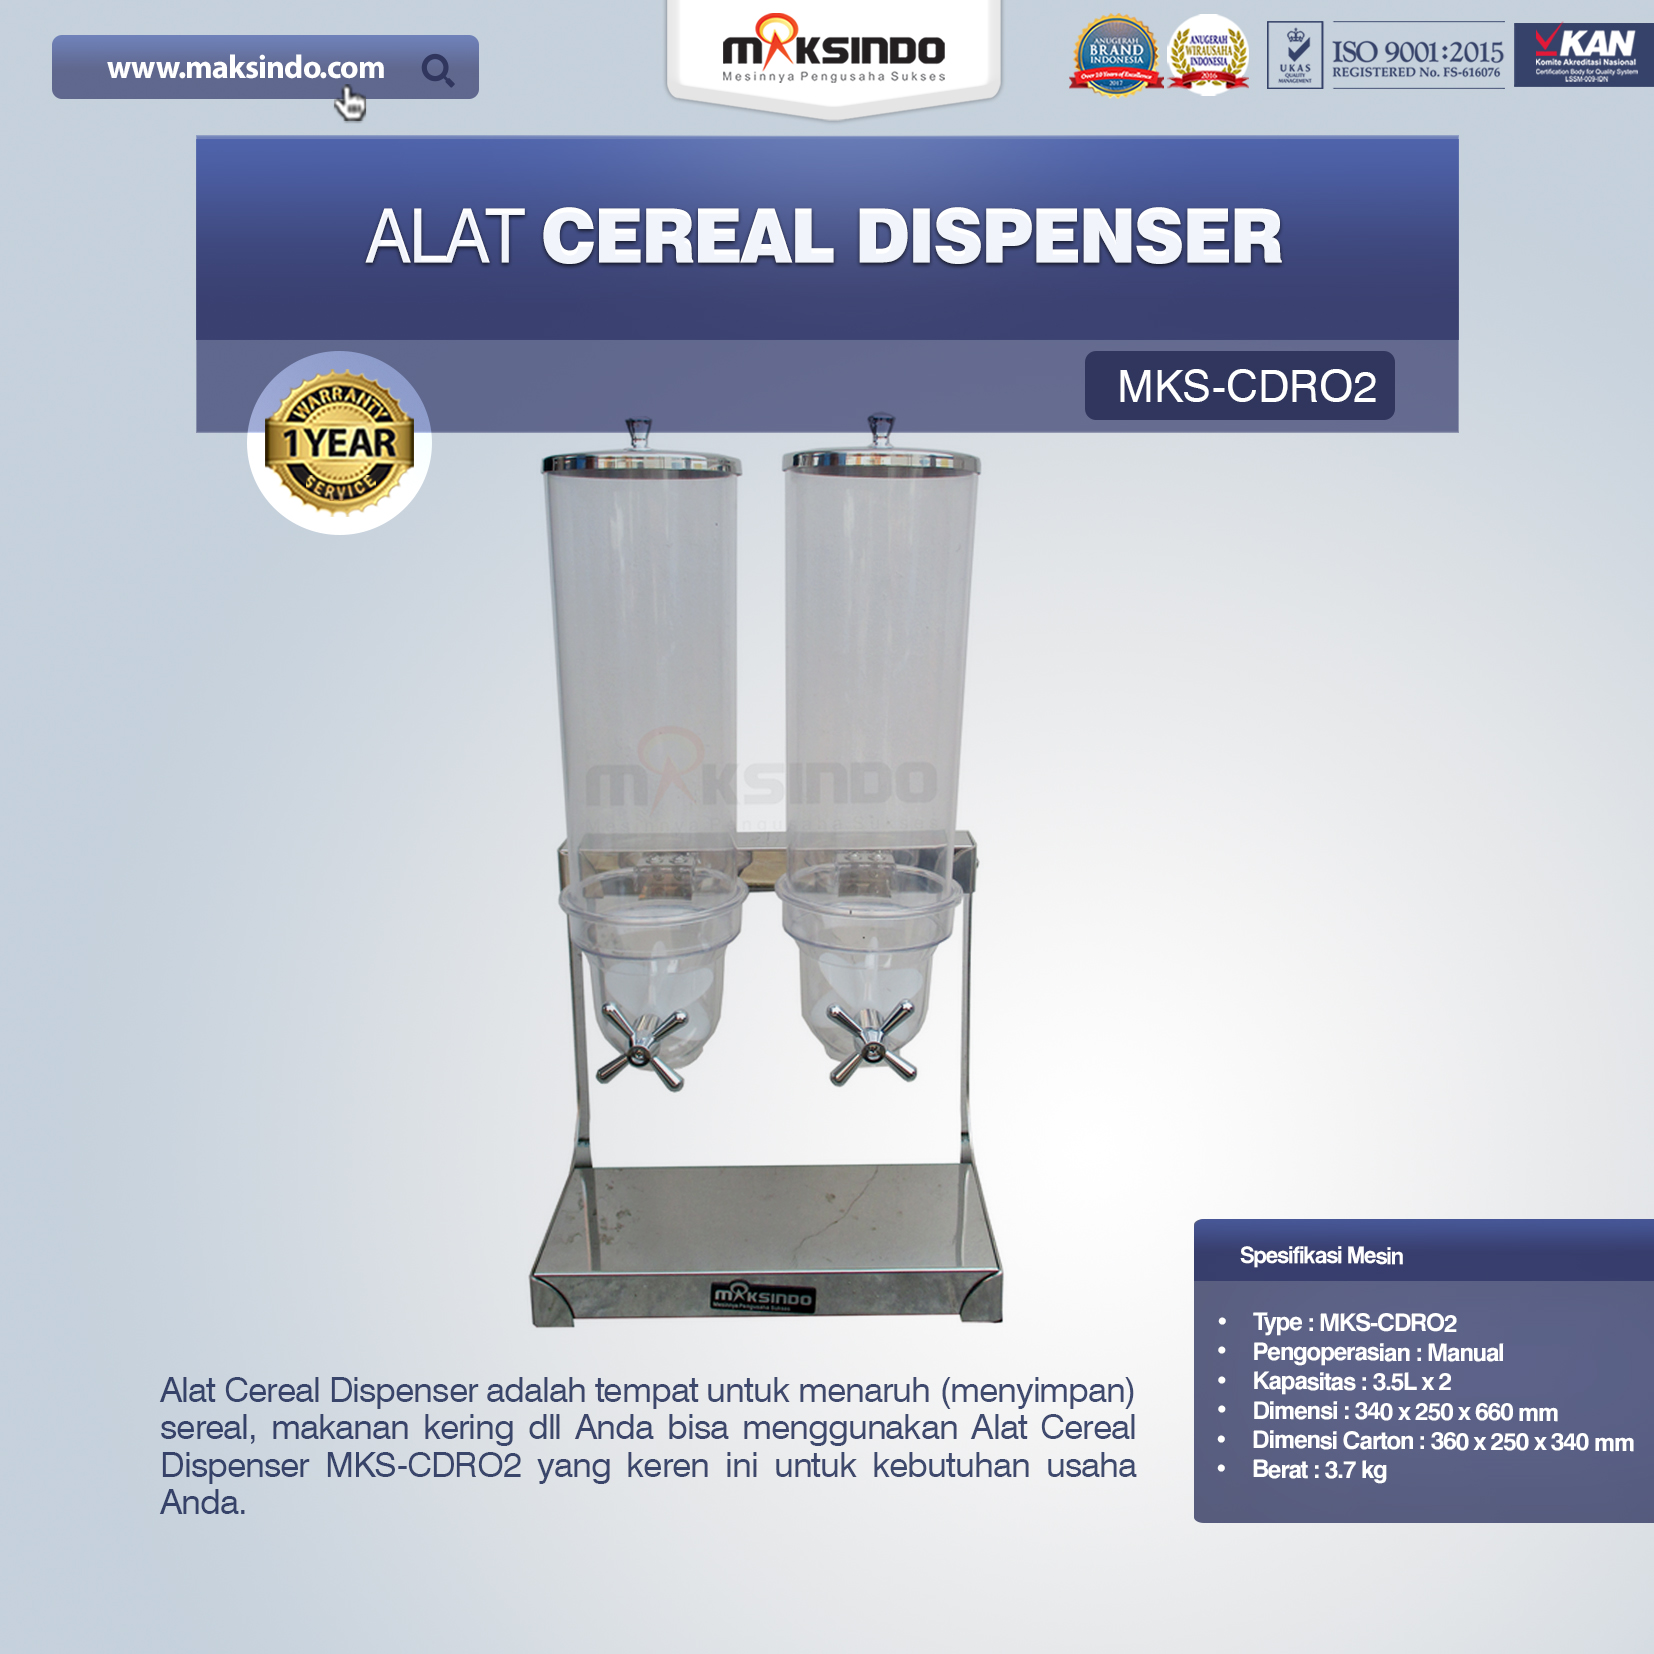 Jual Alat Cereal Dispenser MKS-CDR02 di Bogor